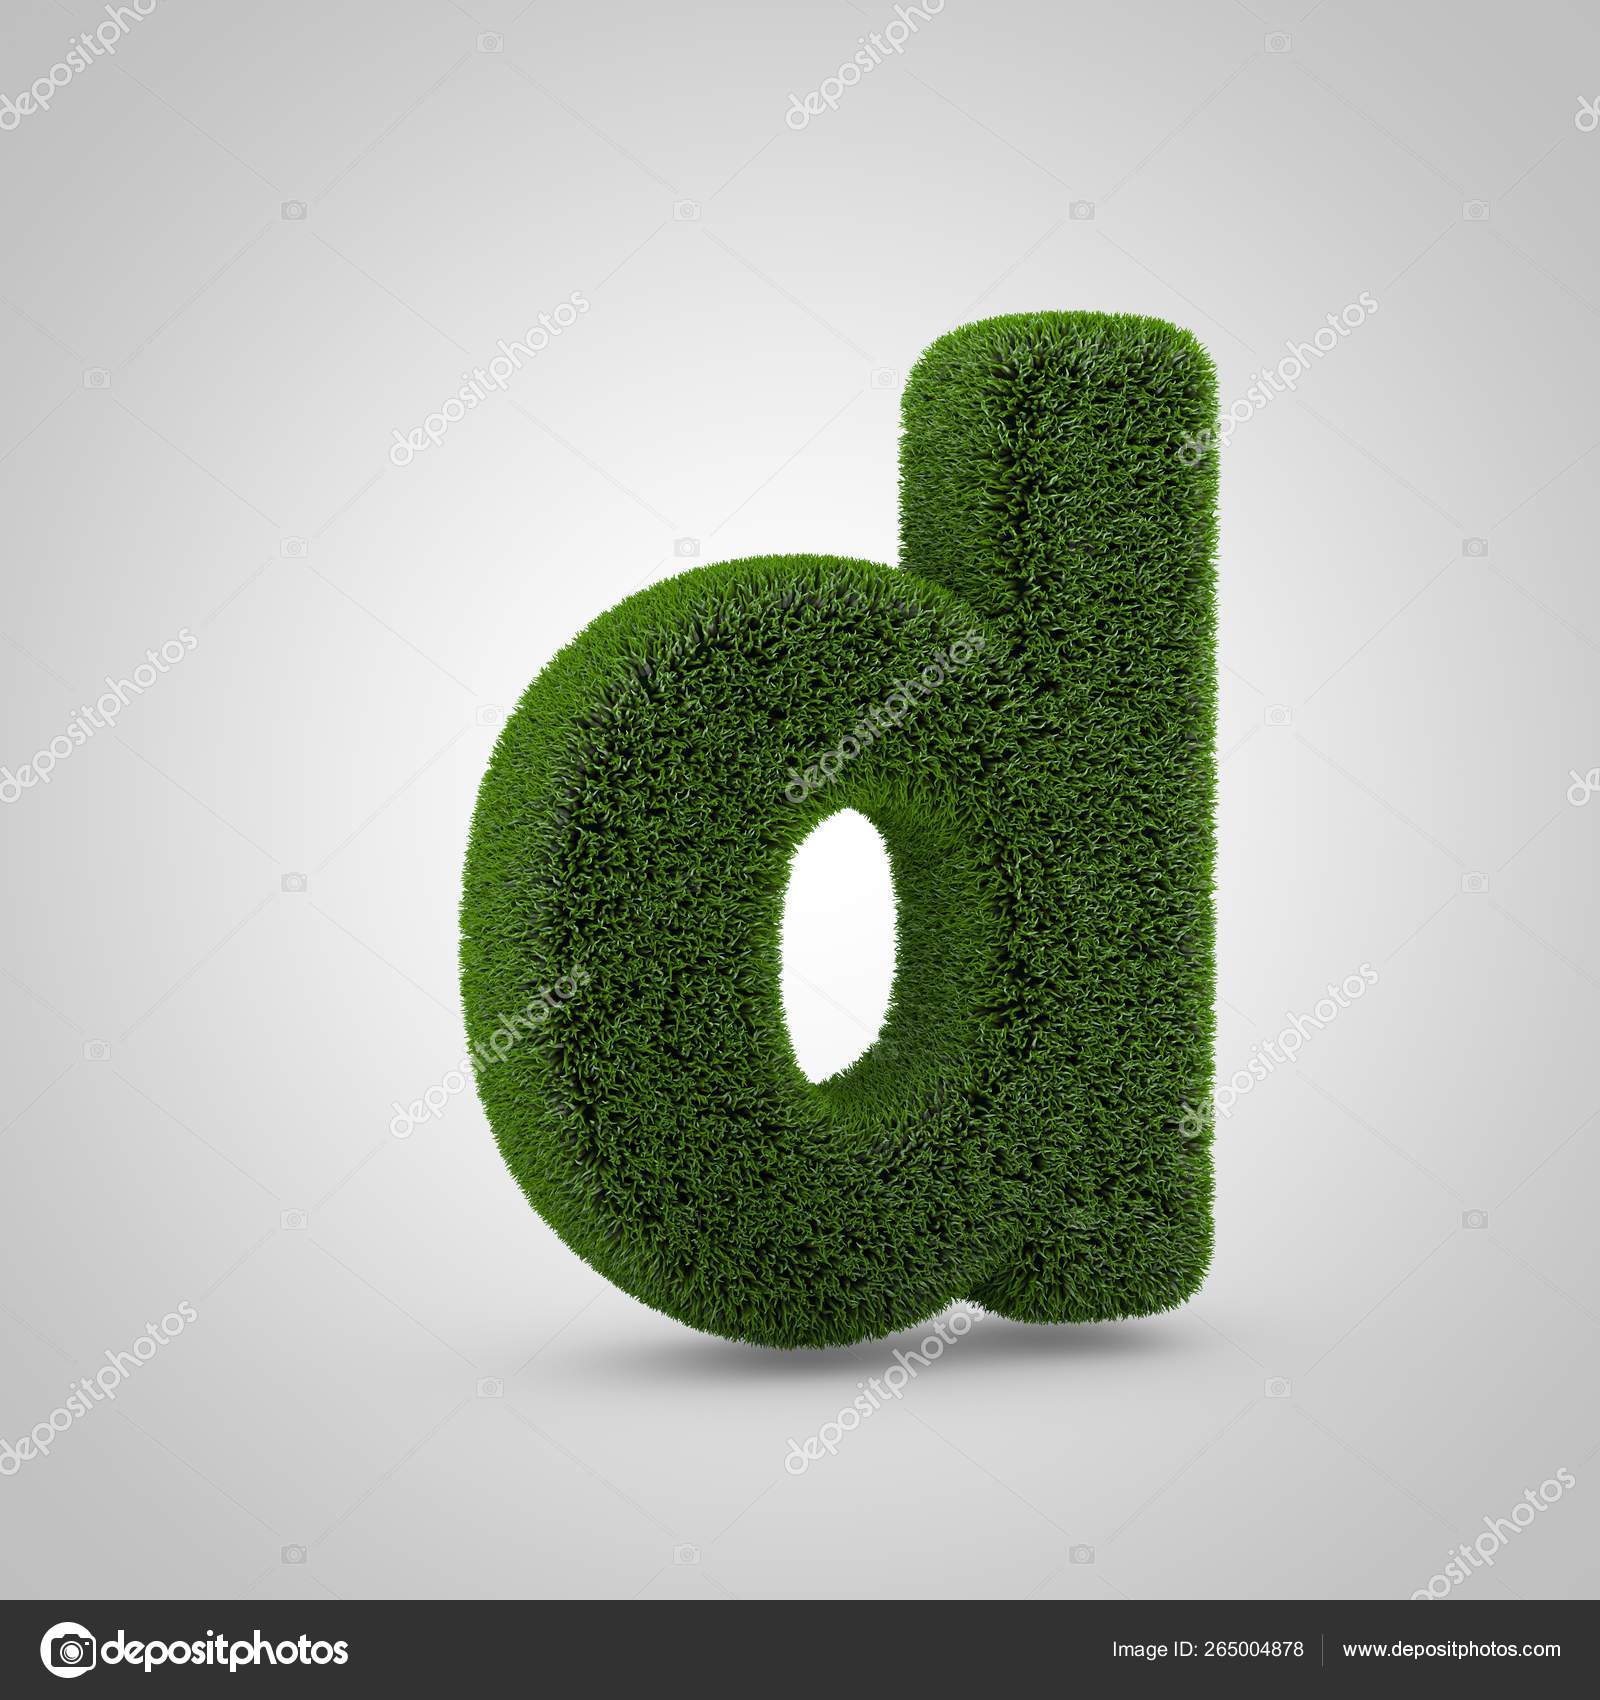 https://st4.depositphotos.com/4371877/26500/i/1600/depositphotos_265004878-stock-photo-volumetric-green-moss-lowercase-letter.jpg